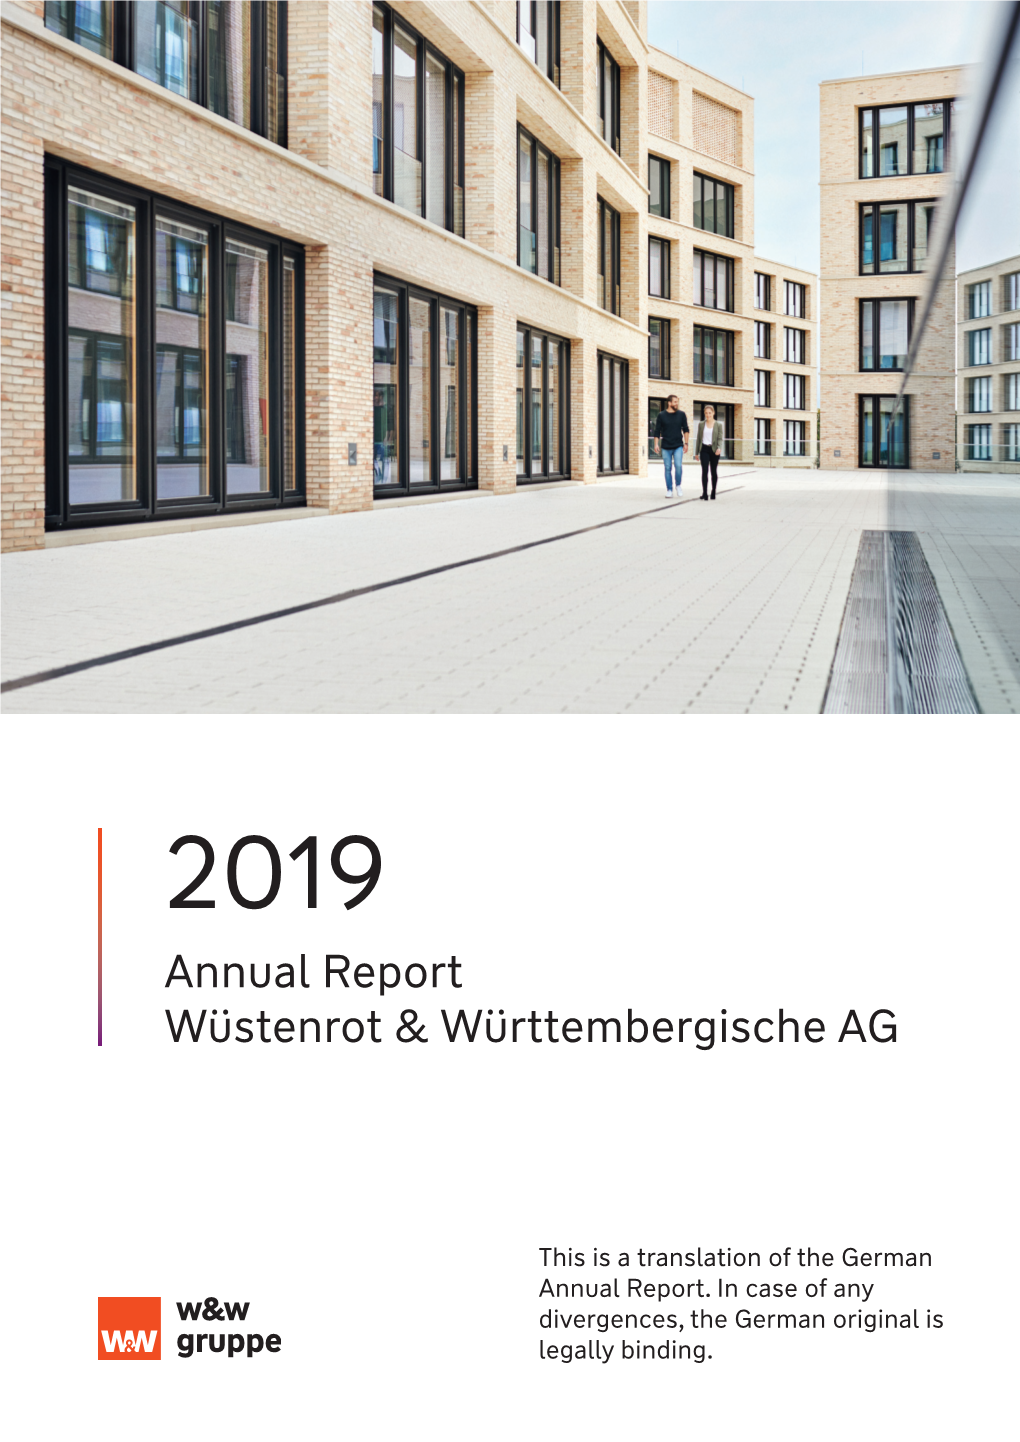 Annual Report Wüstenrot & Württembergische AG